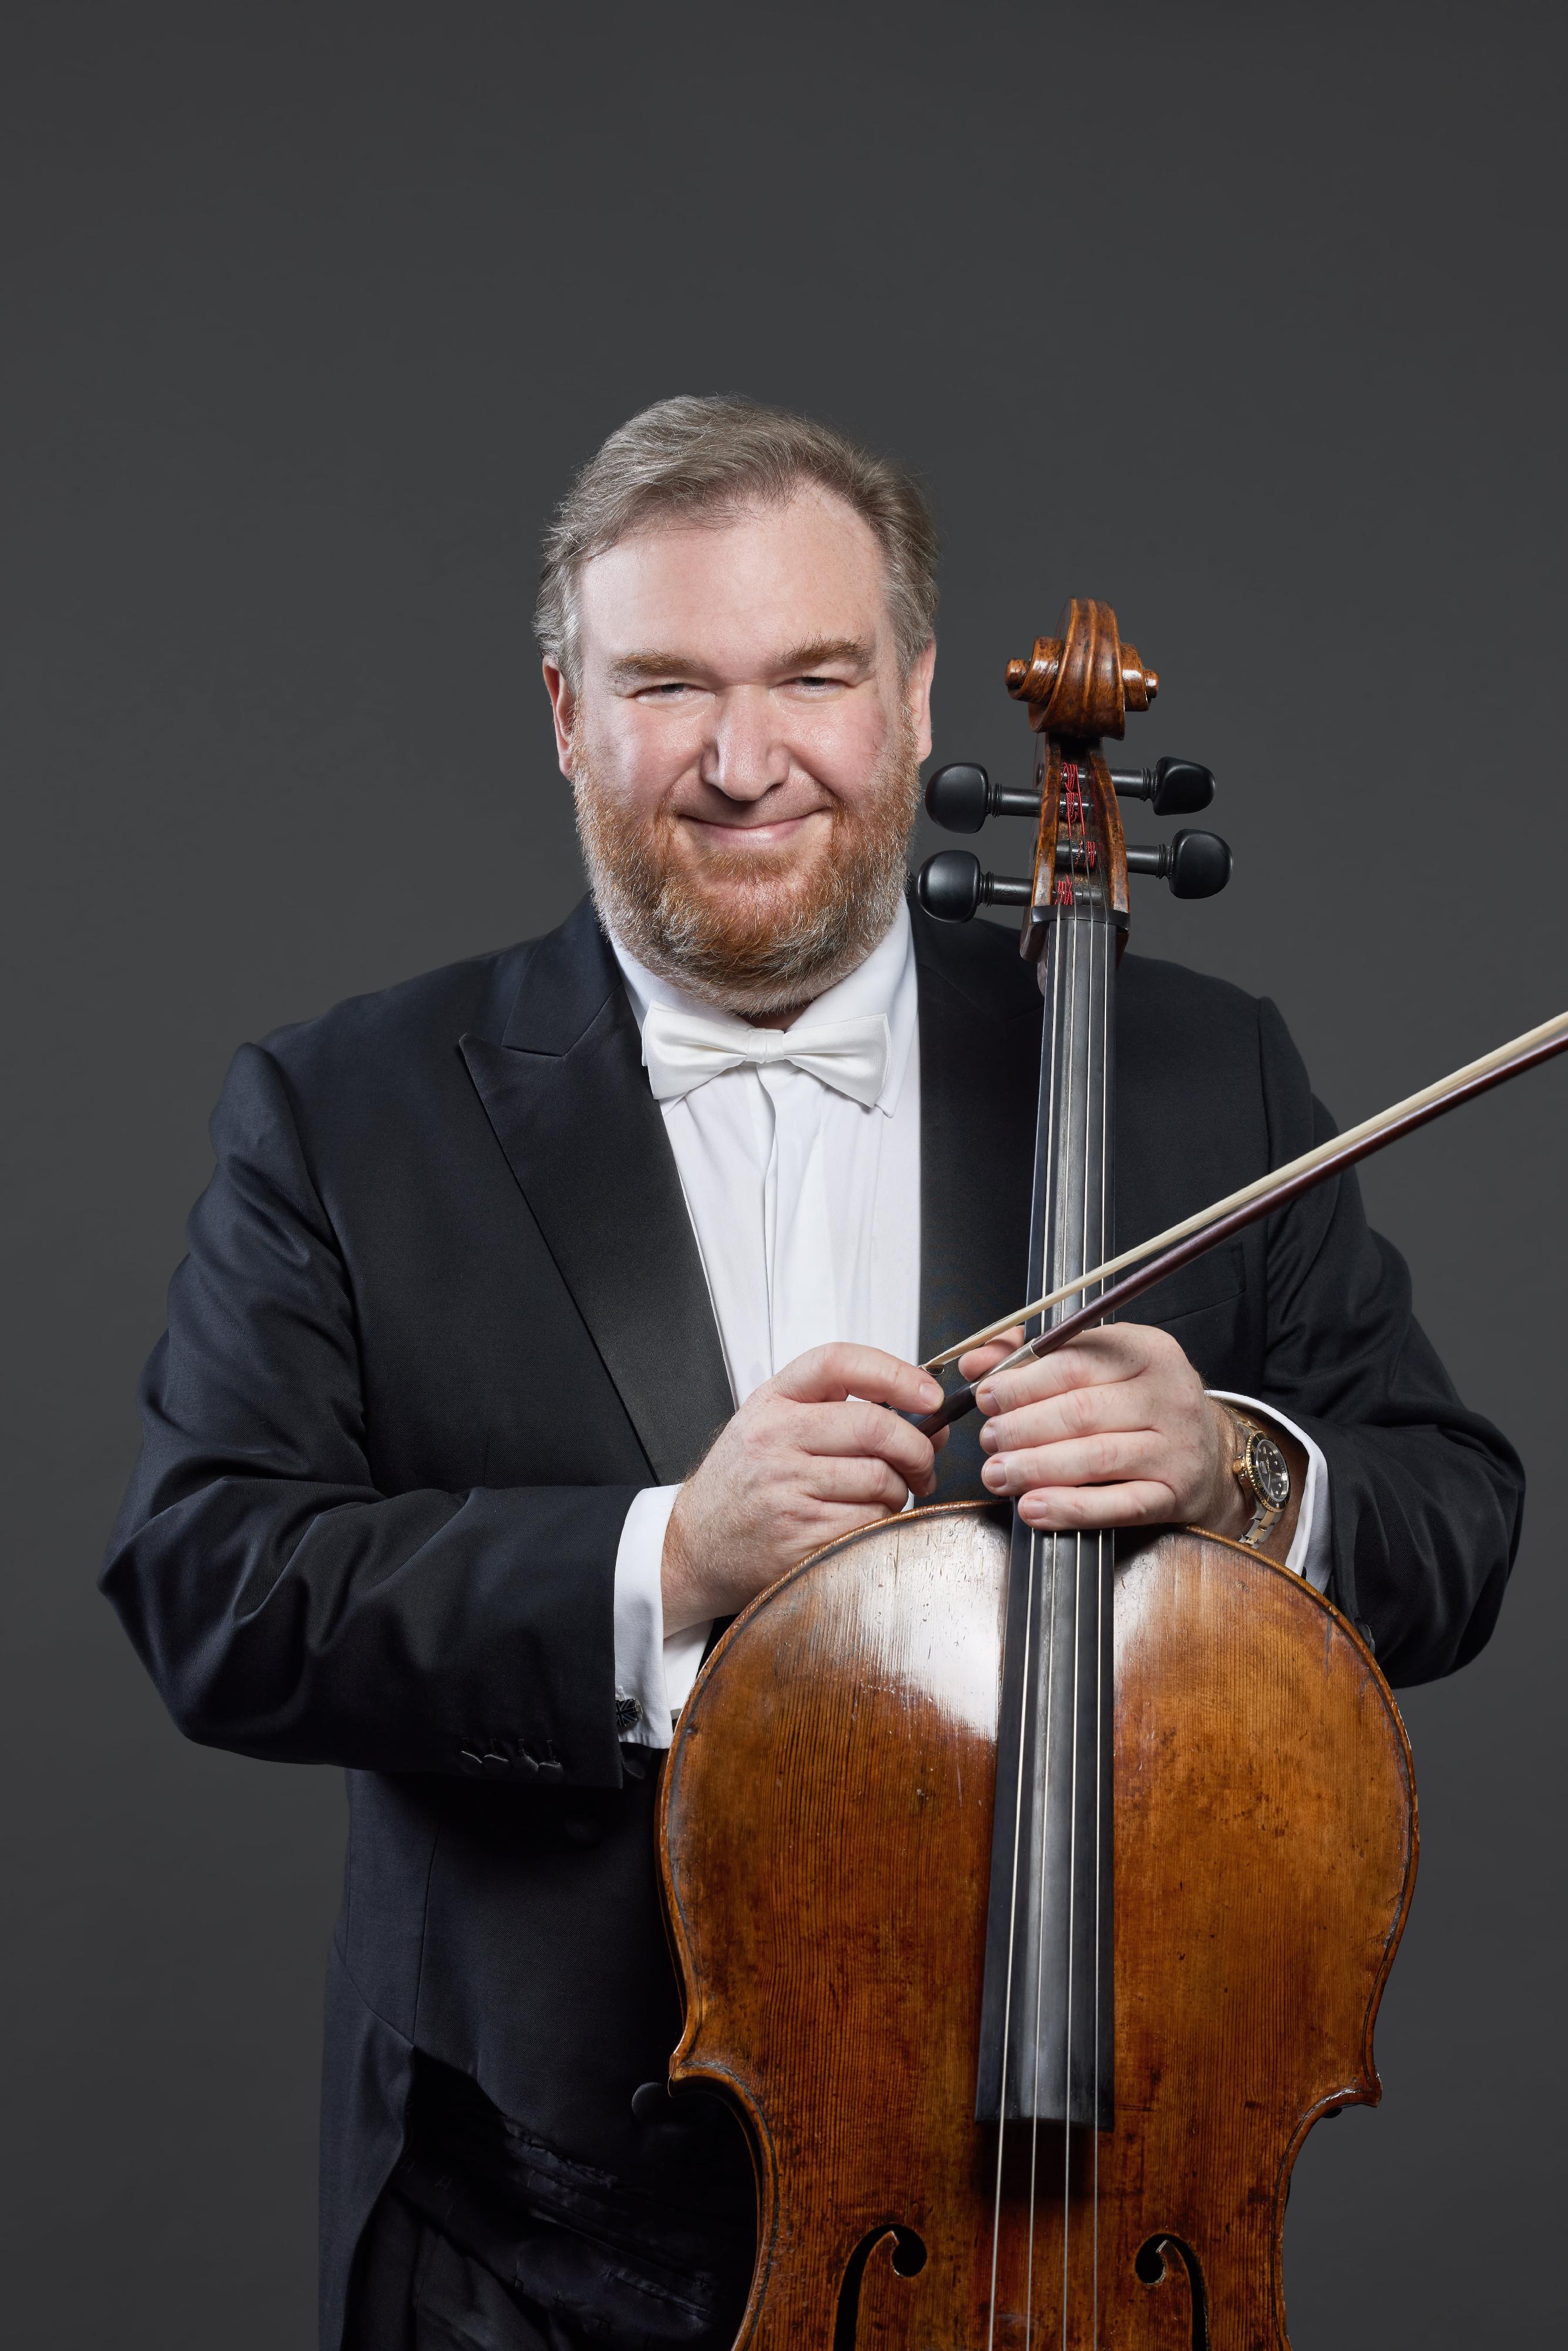 康樂及文化事務署十月初呈獻《古典•今作》演奏會。圖為大提琴家鮑力卓。（圖片來源：Keith Hiro）